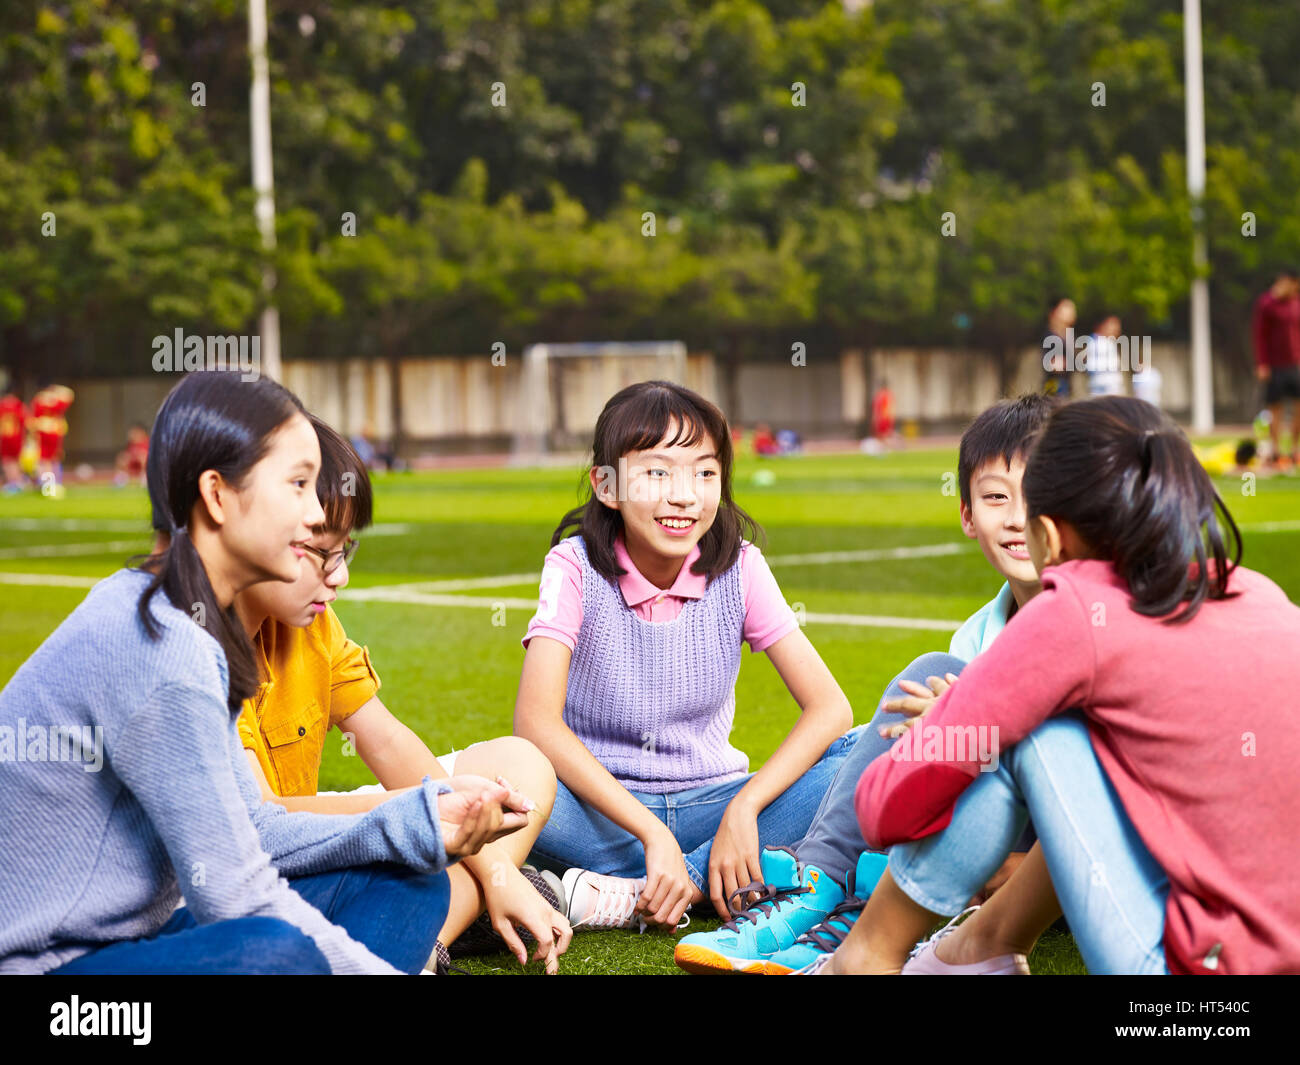 Gruppe von asiatischen Grundschule jungen und Mädchen sitzen und plaudern auf dem Spielplatz Rasen Stockfoto